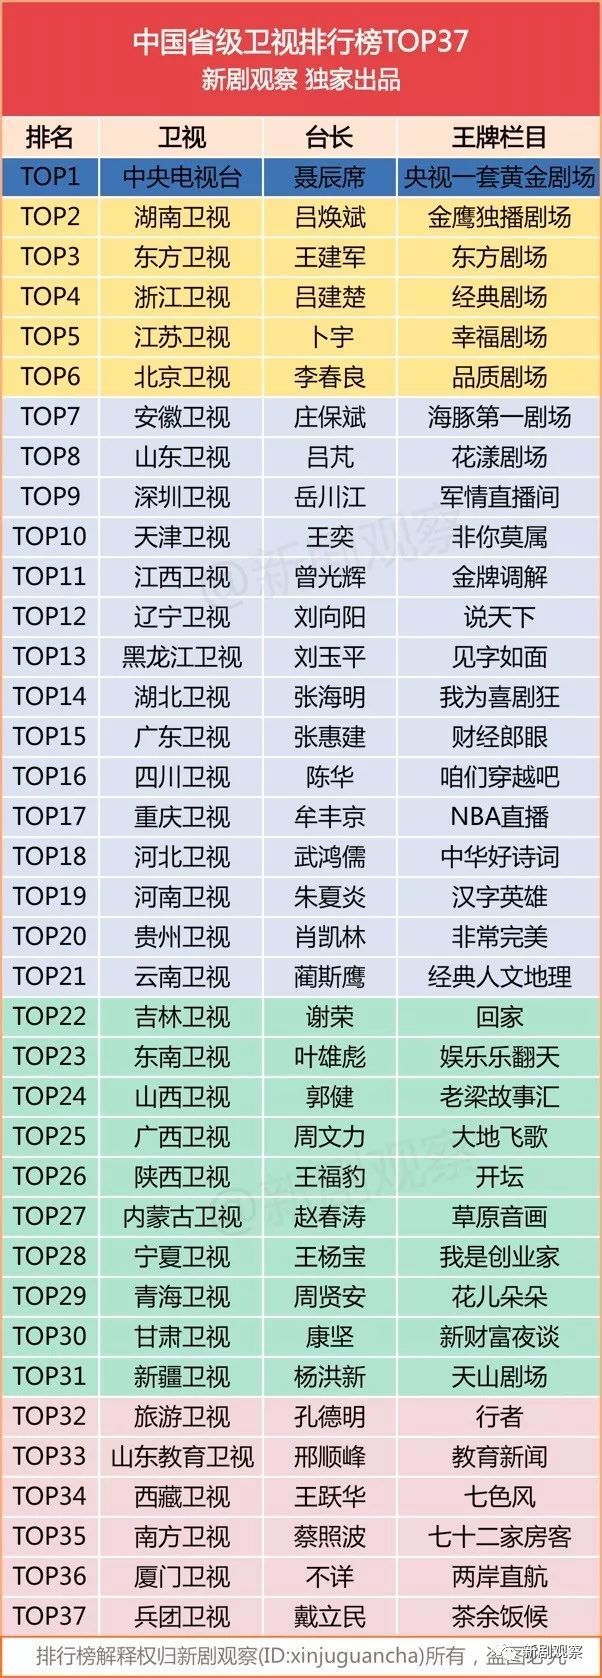 中国省级卫视总排行TOP37出炉！一线卫视“春秋五霸”抢夺收视！